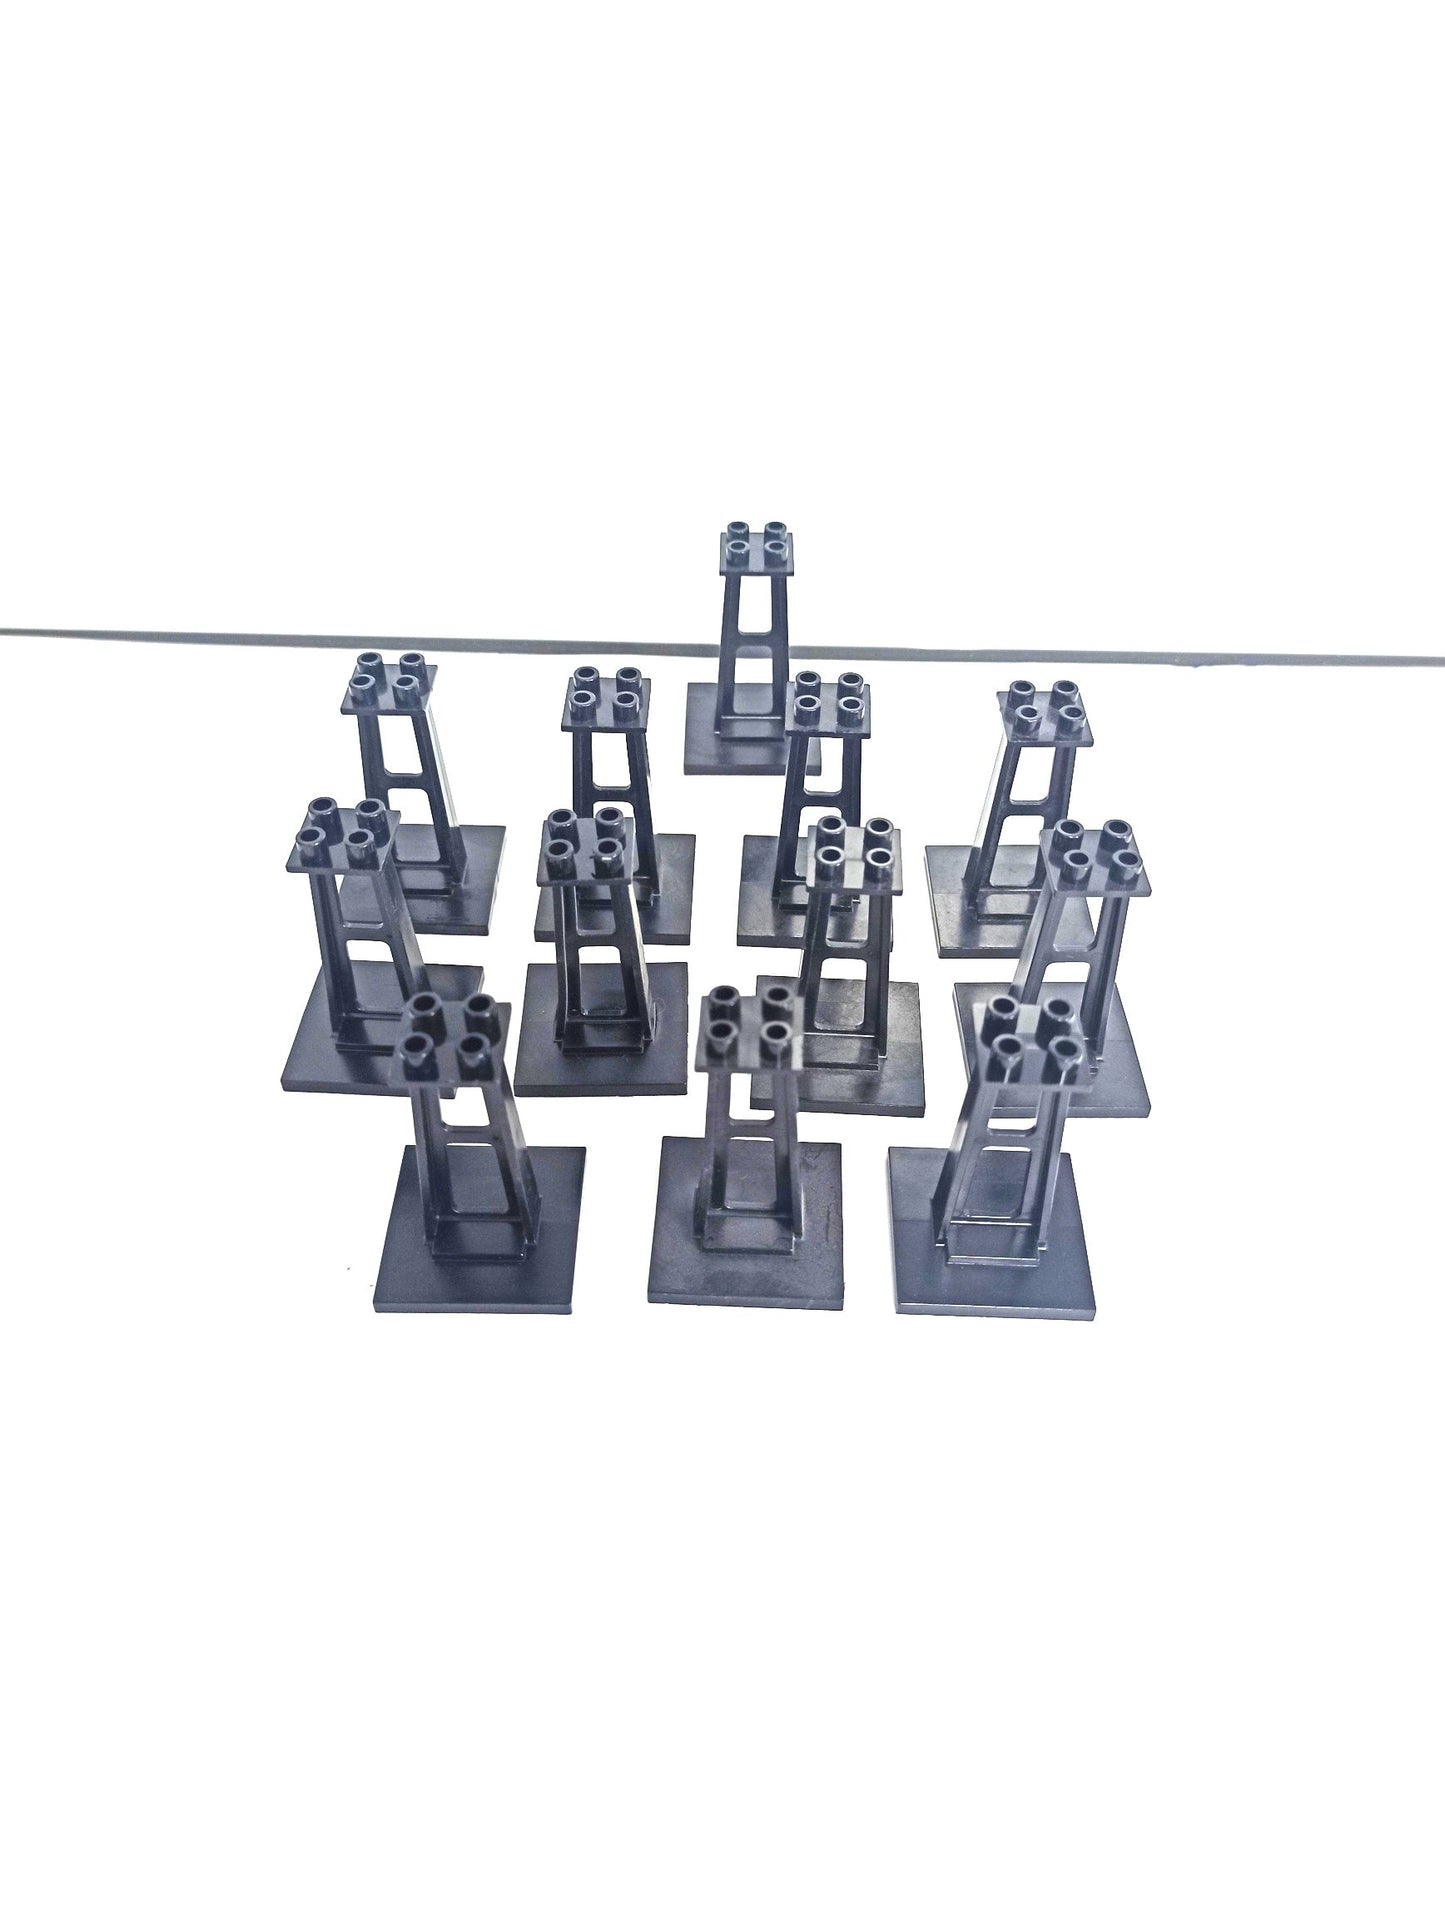 LEGO® Sortiment Sonderteile 2680 Mast Pfeiler Stütze Monorail klein  schwarz - Peer Online Shop